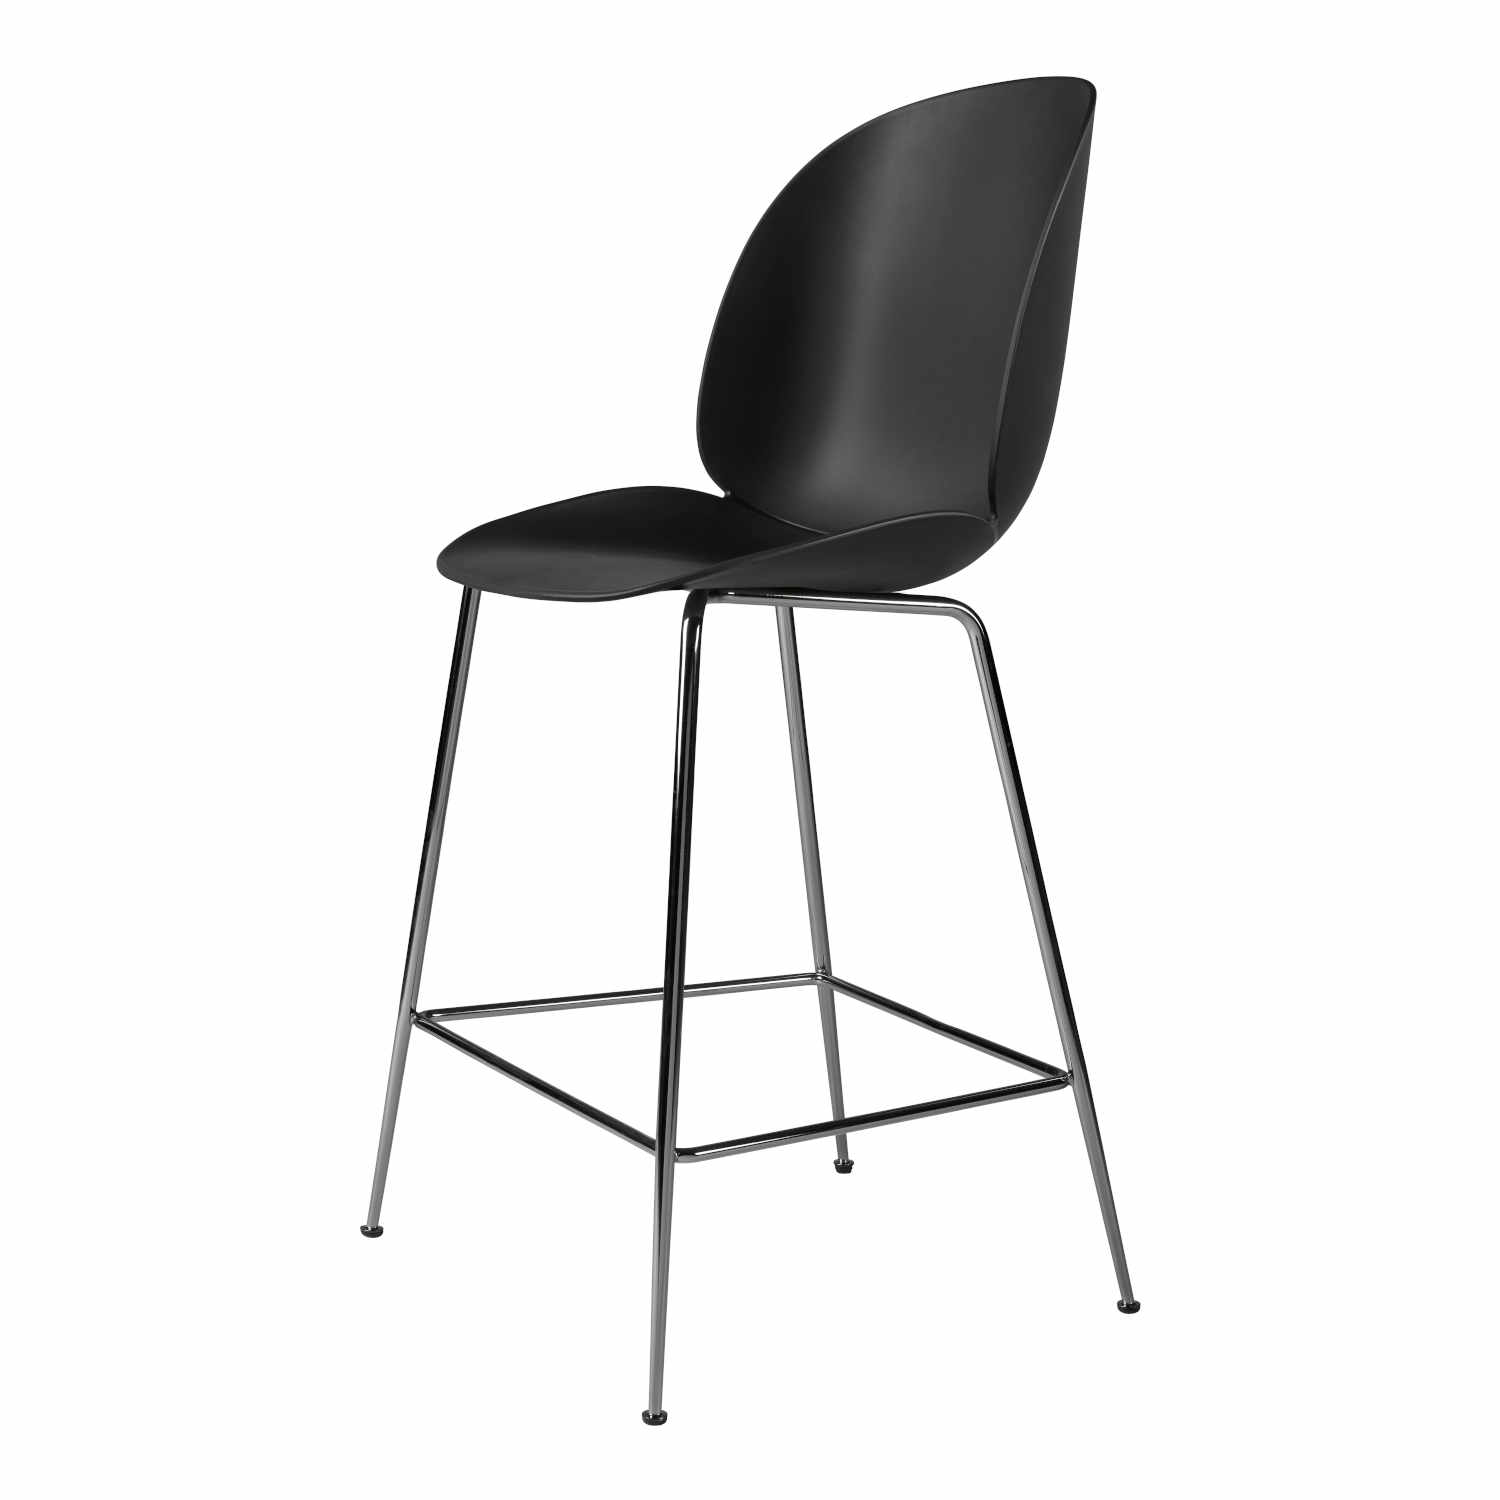 Beetle Counter Chair Conic Barhocker, Grösse sitzhöhe 73,5 cm, Sitzschale Plastic Shell dark green, Untergestell Conic Base black chrome von GUBI